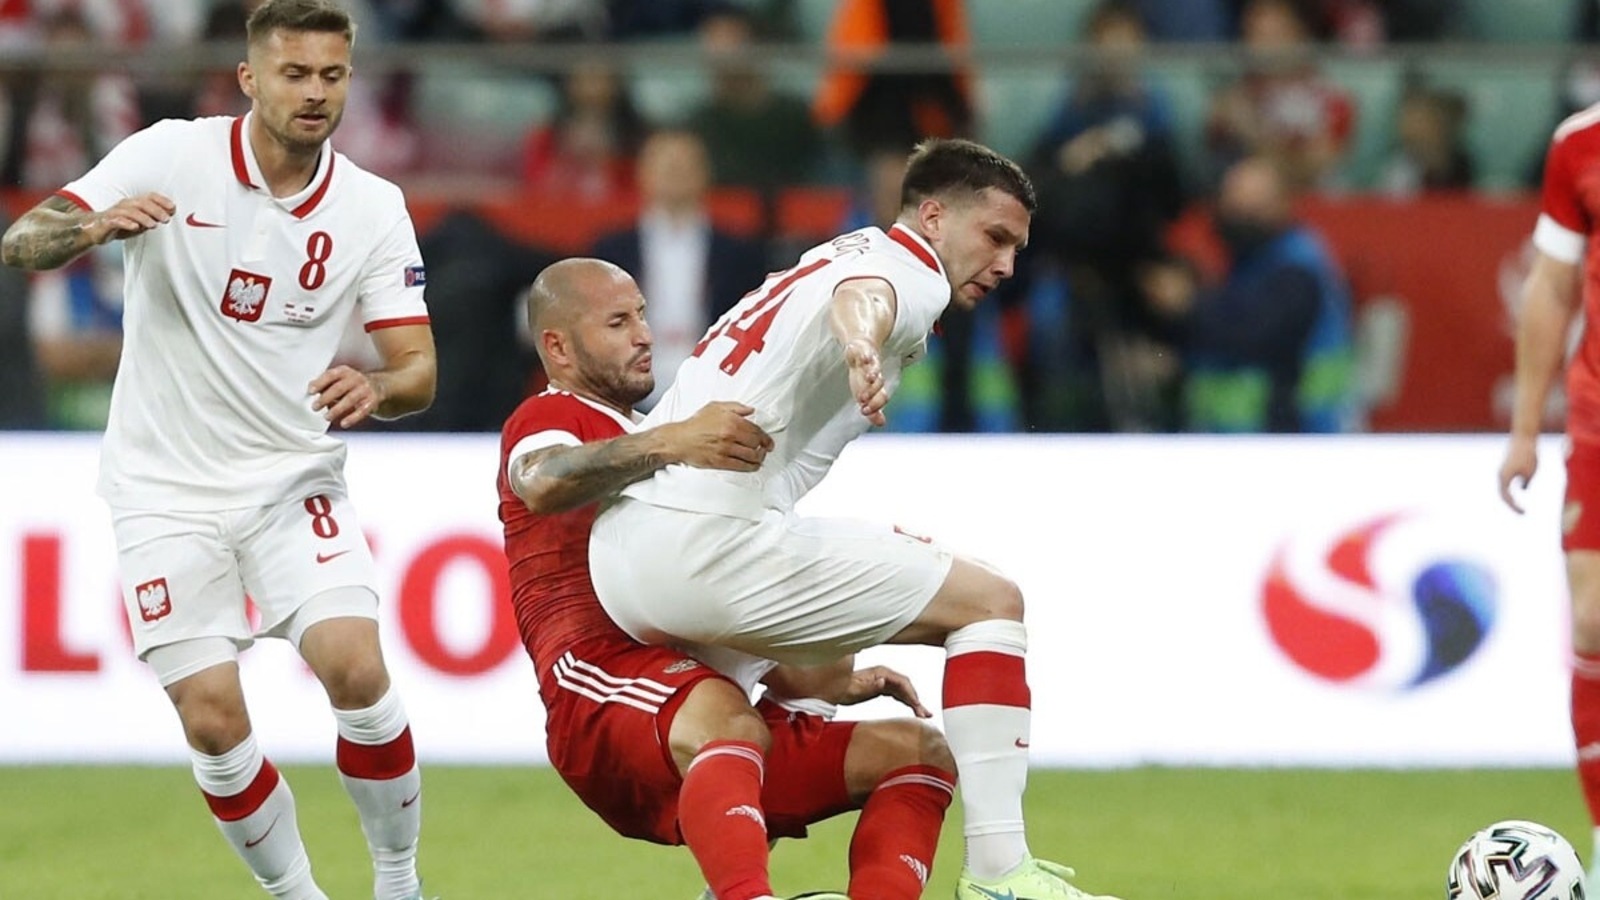 Euro 2020: Rusko v prípravnom období remizovalo s Poľskom 1: 1